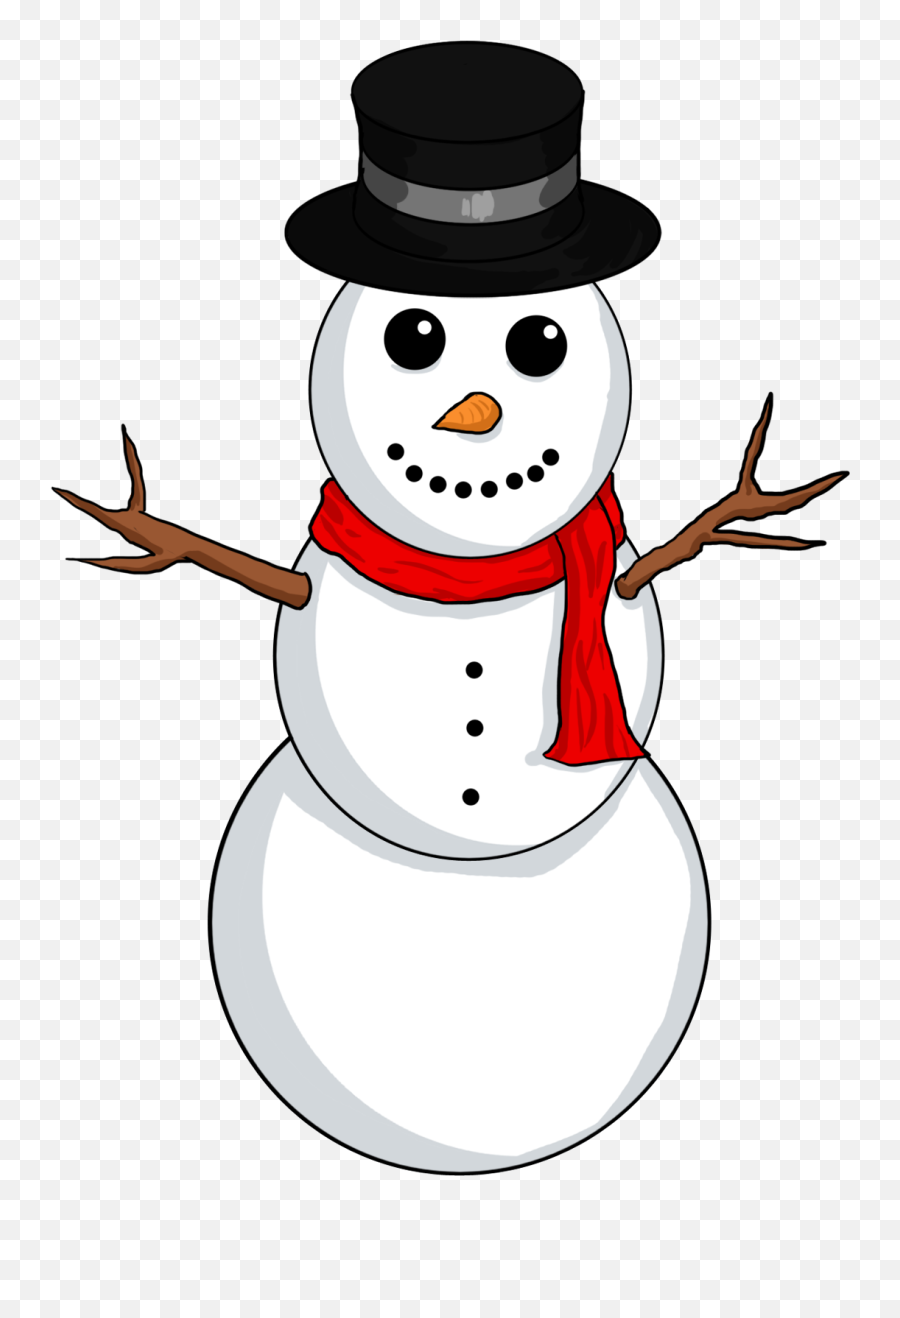 Snowman Transparent Background Clipart - Clipart Frosty The Snowman Png,Snowman Transparent